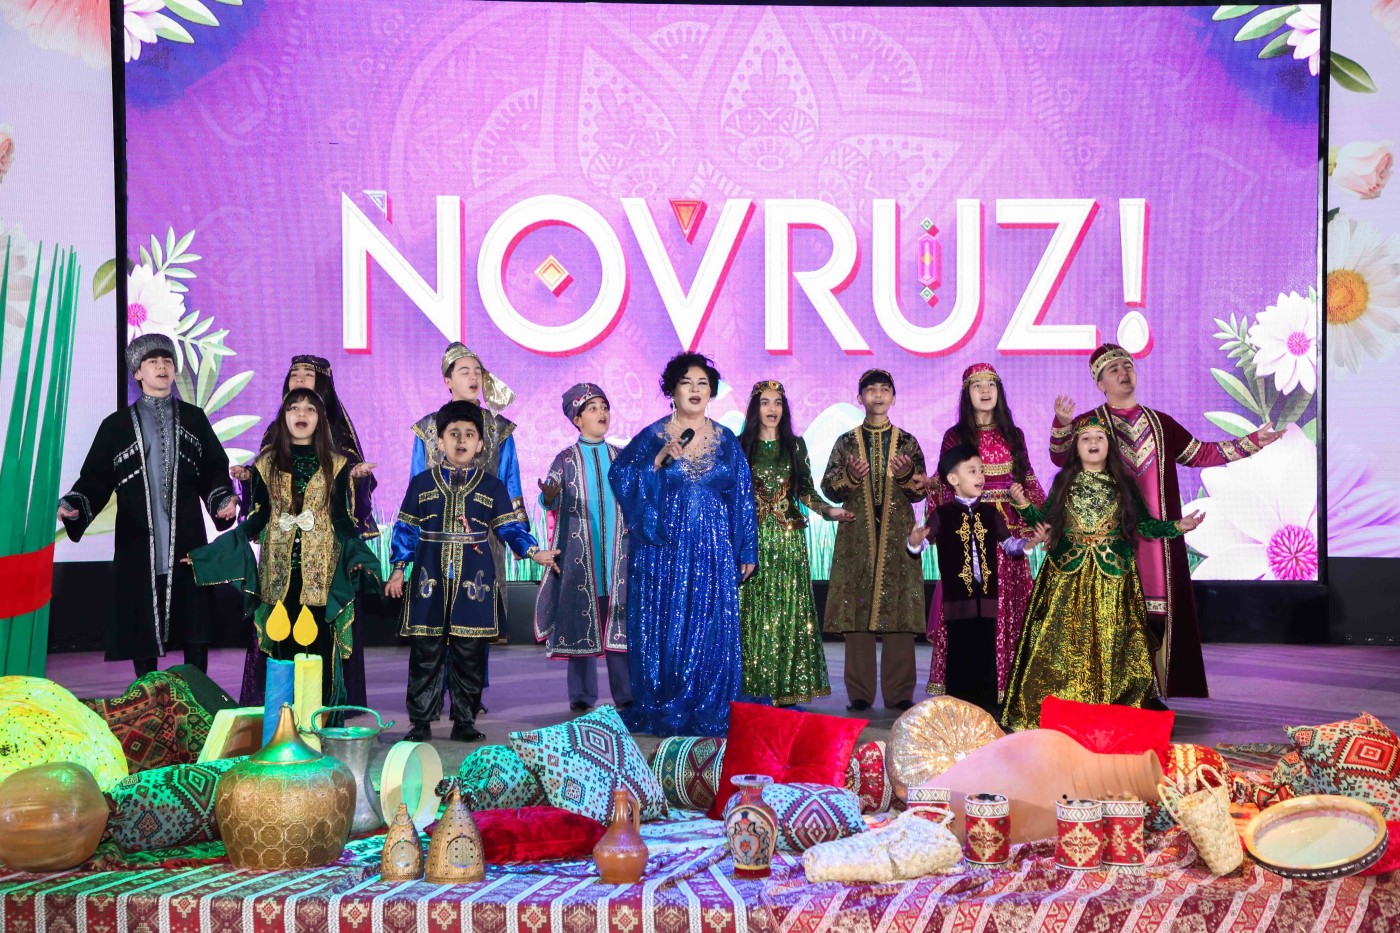 Xətaidə  "Sonsuz sevgilərlə Novruz"adlı konsert proqramı təşkil olundu - FOTOLAR